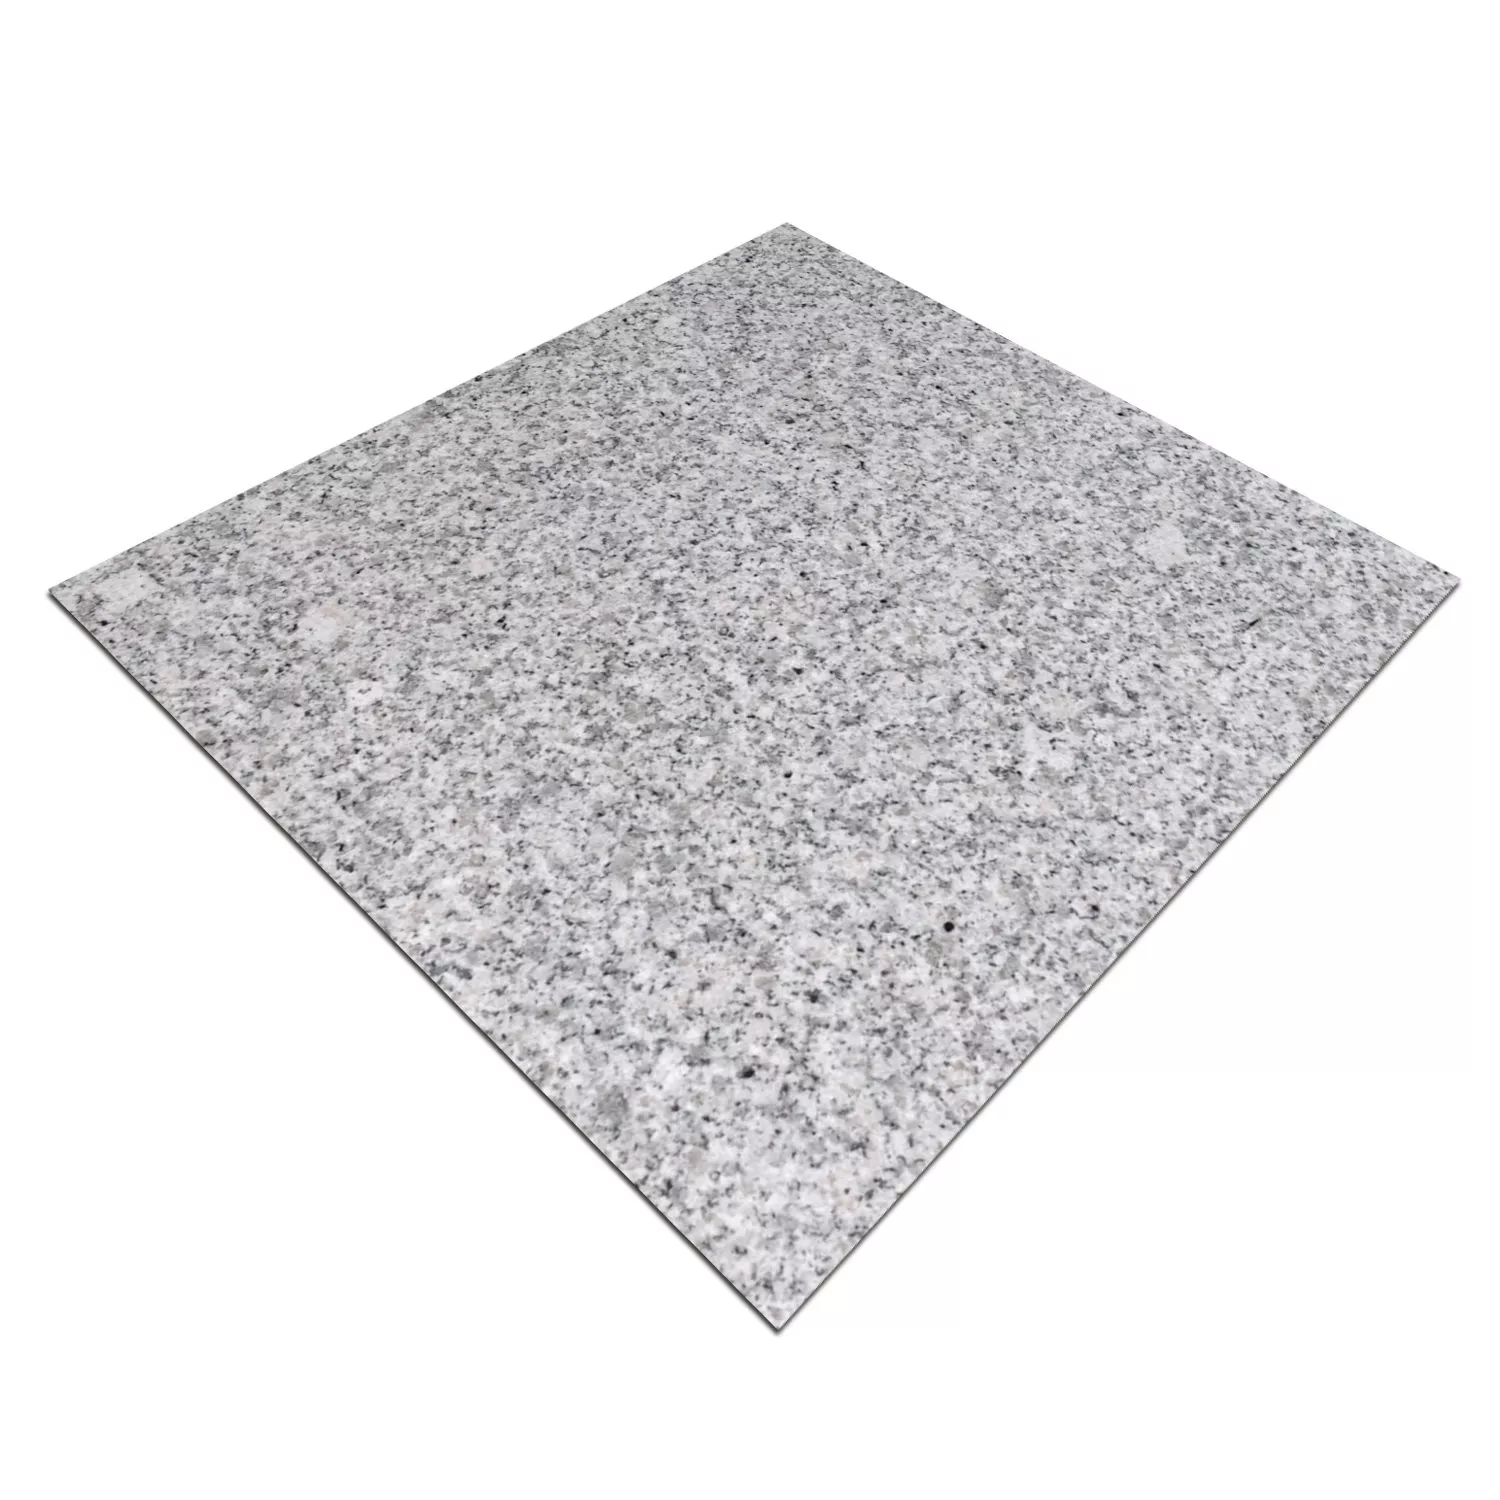 Πλακάκια Aπό Φυσική Πέτρα Γρανίτης China Grey Αμεμπτος 30,5x30,5cm